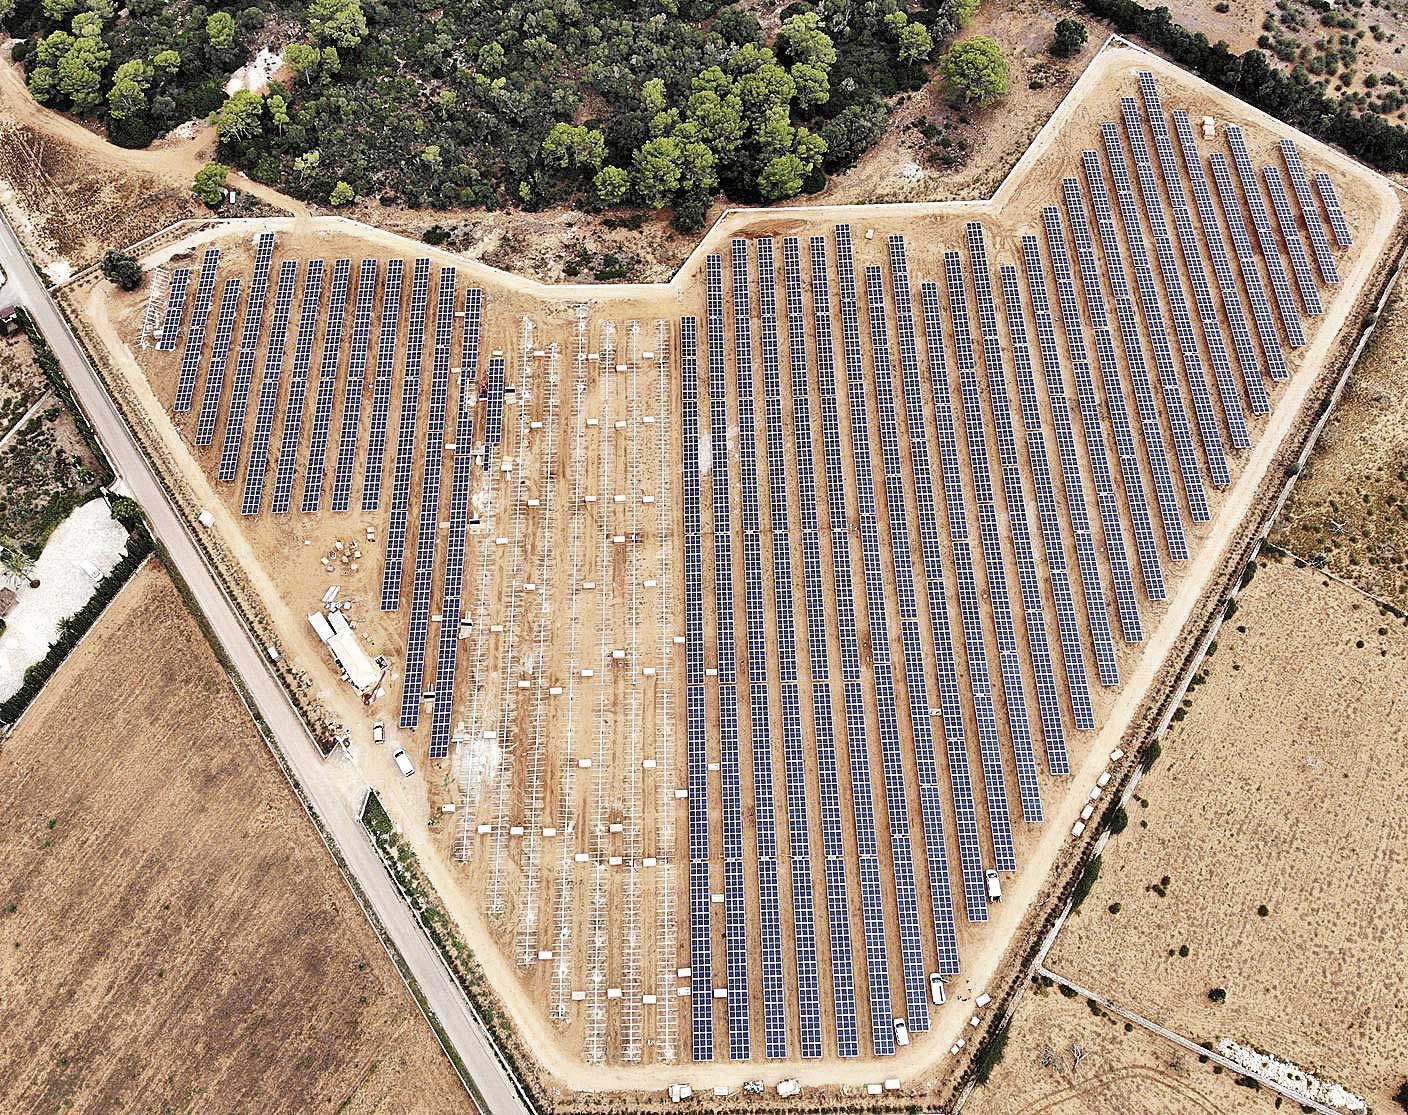 Vista aérea del parque fotovoltaico ubicado en una finca de Sant Llorenç.